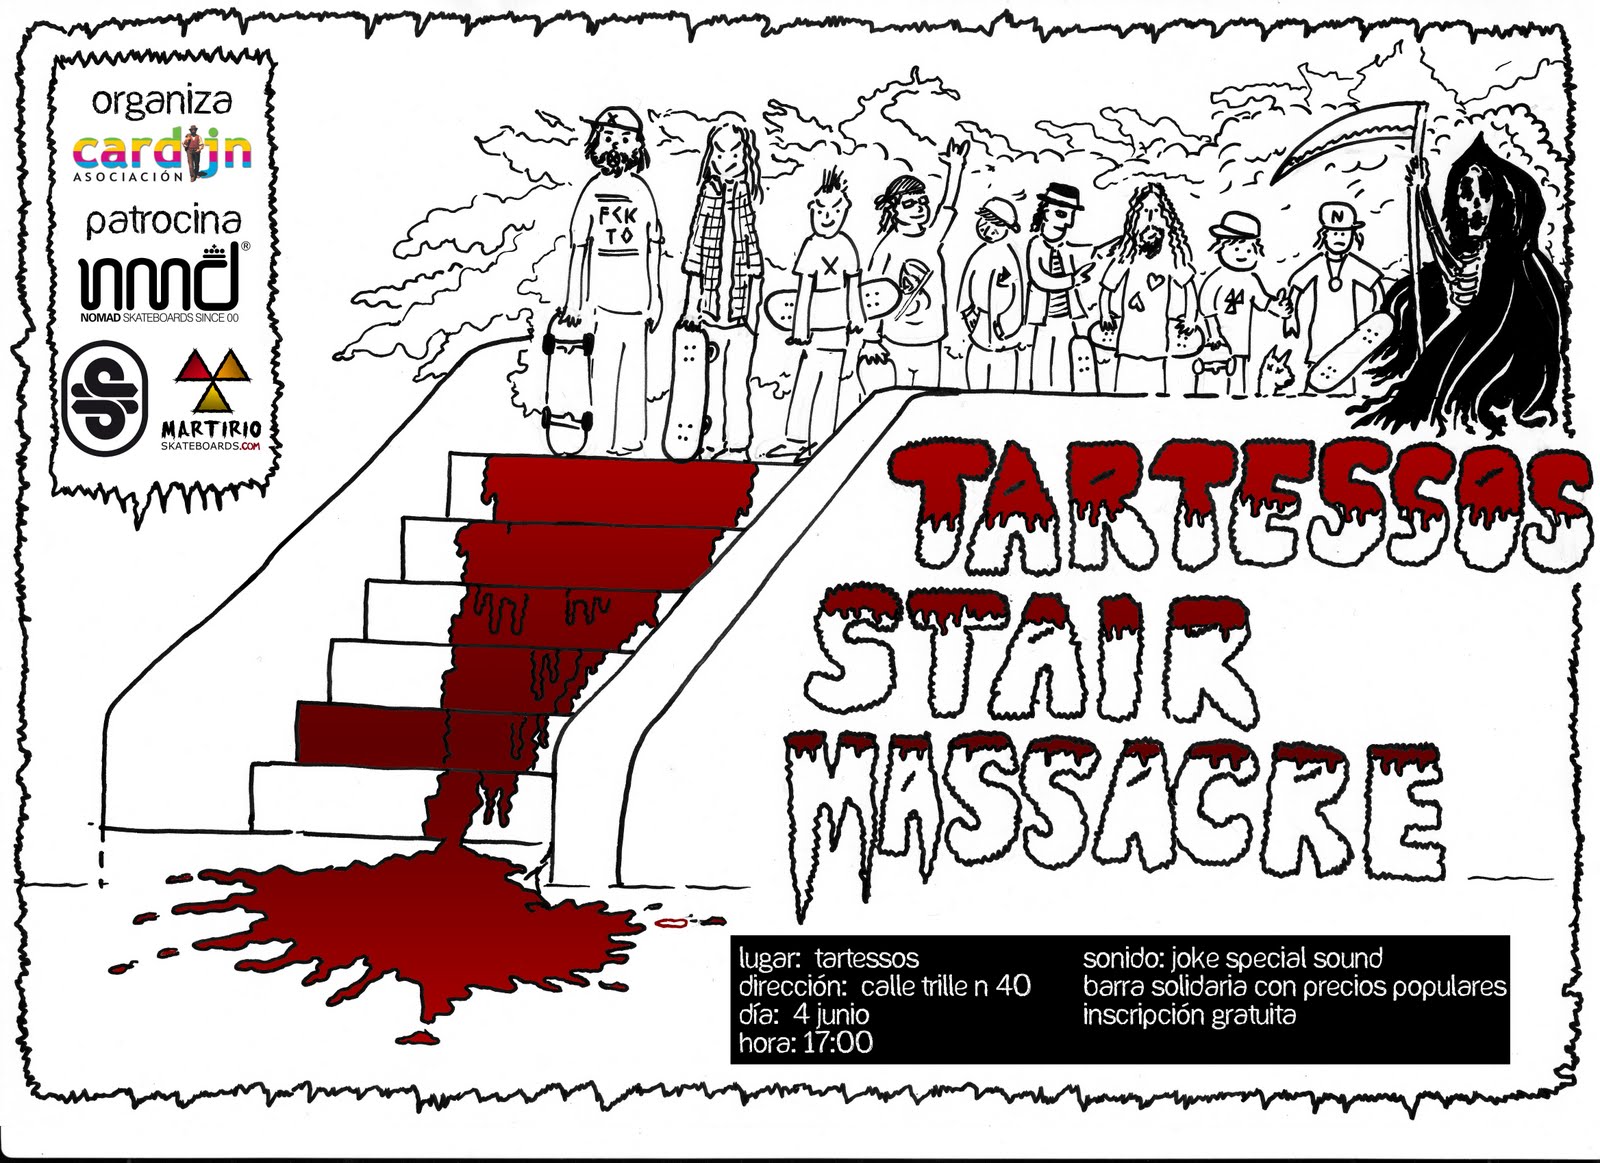 tartessos stair massacre